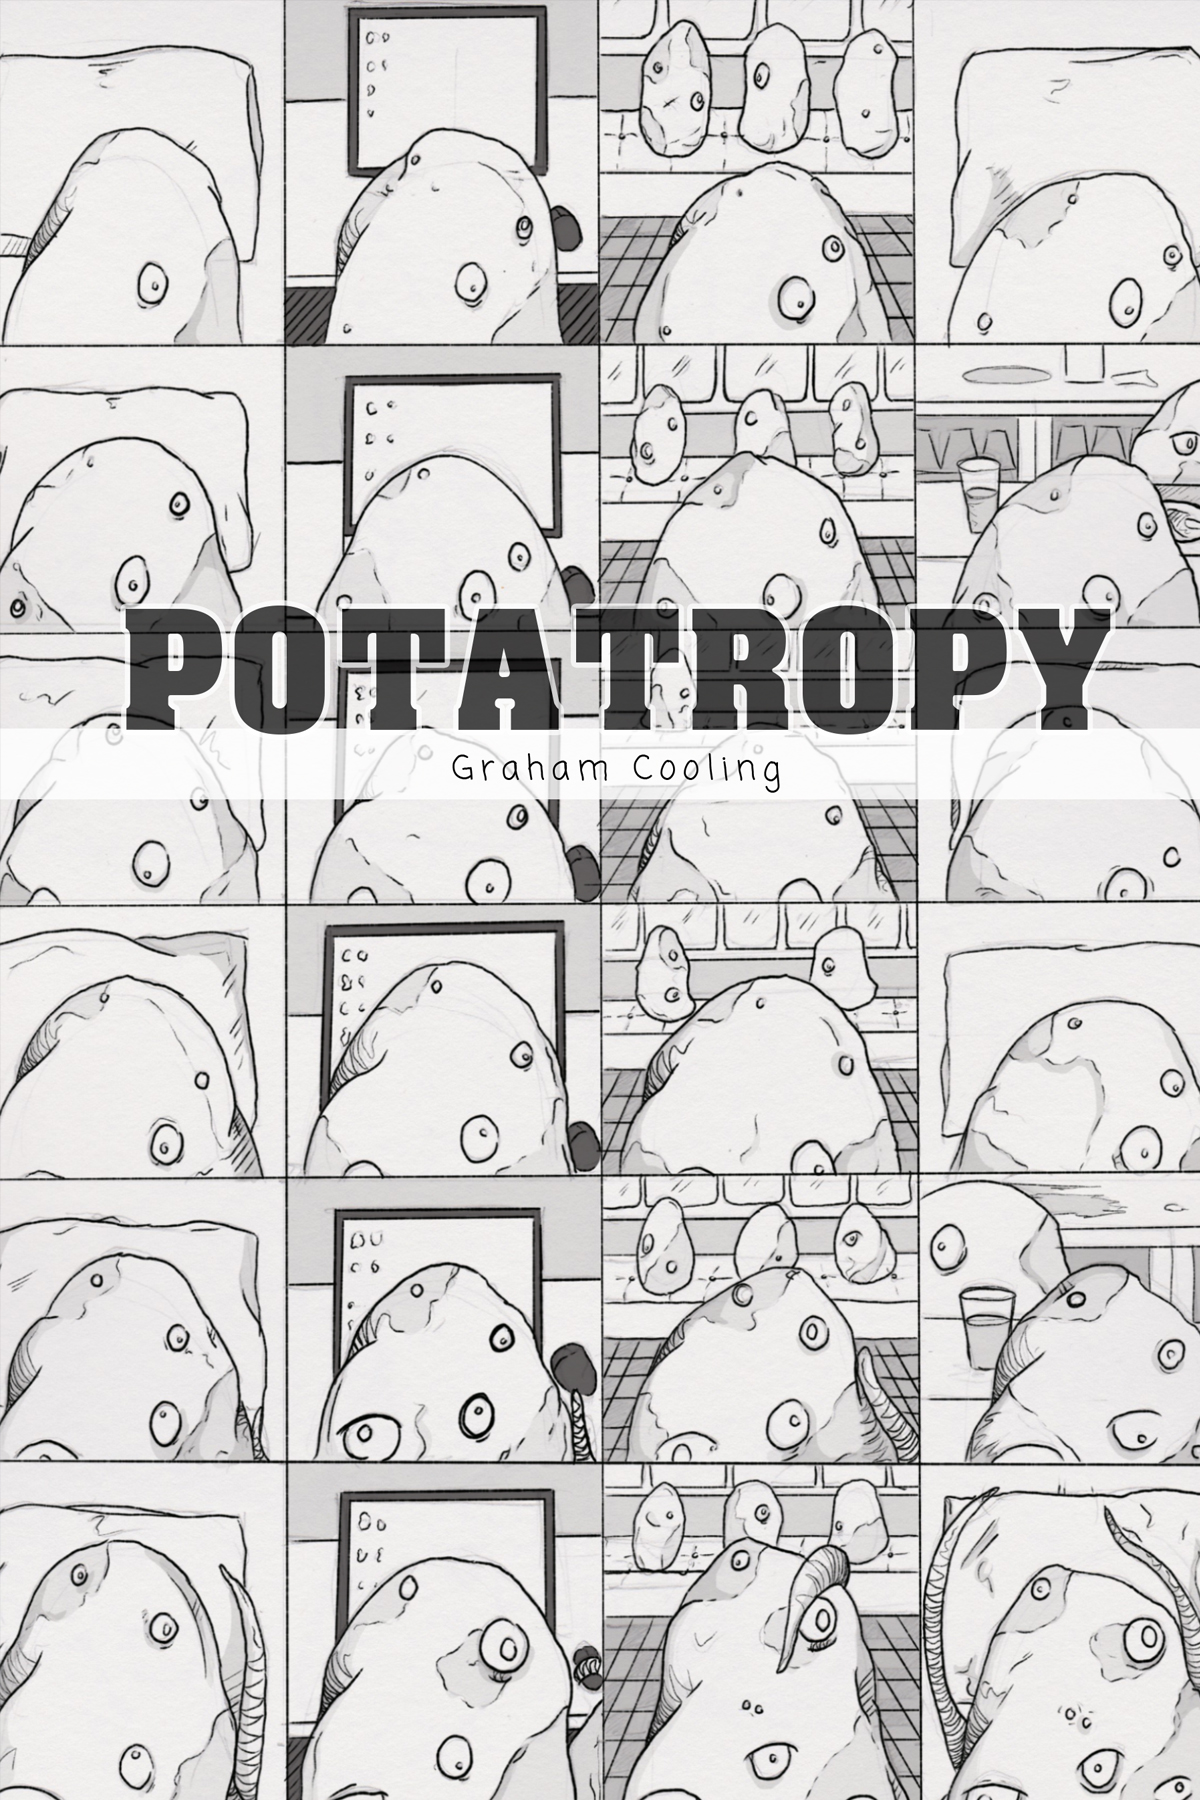 Comics with Potato boy